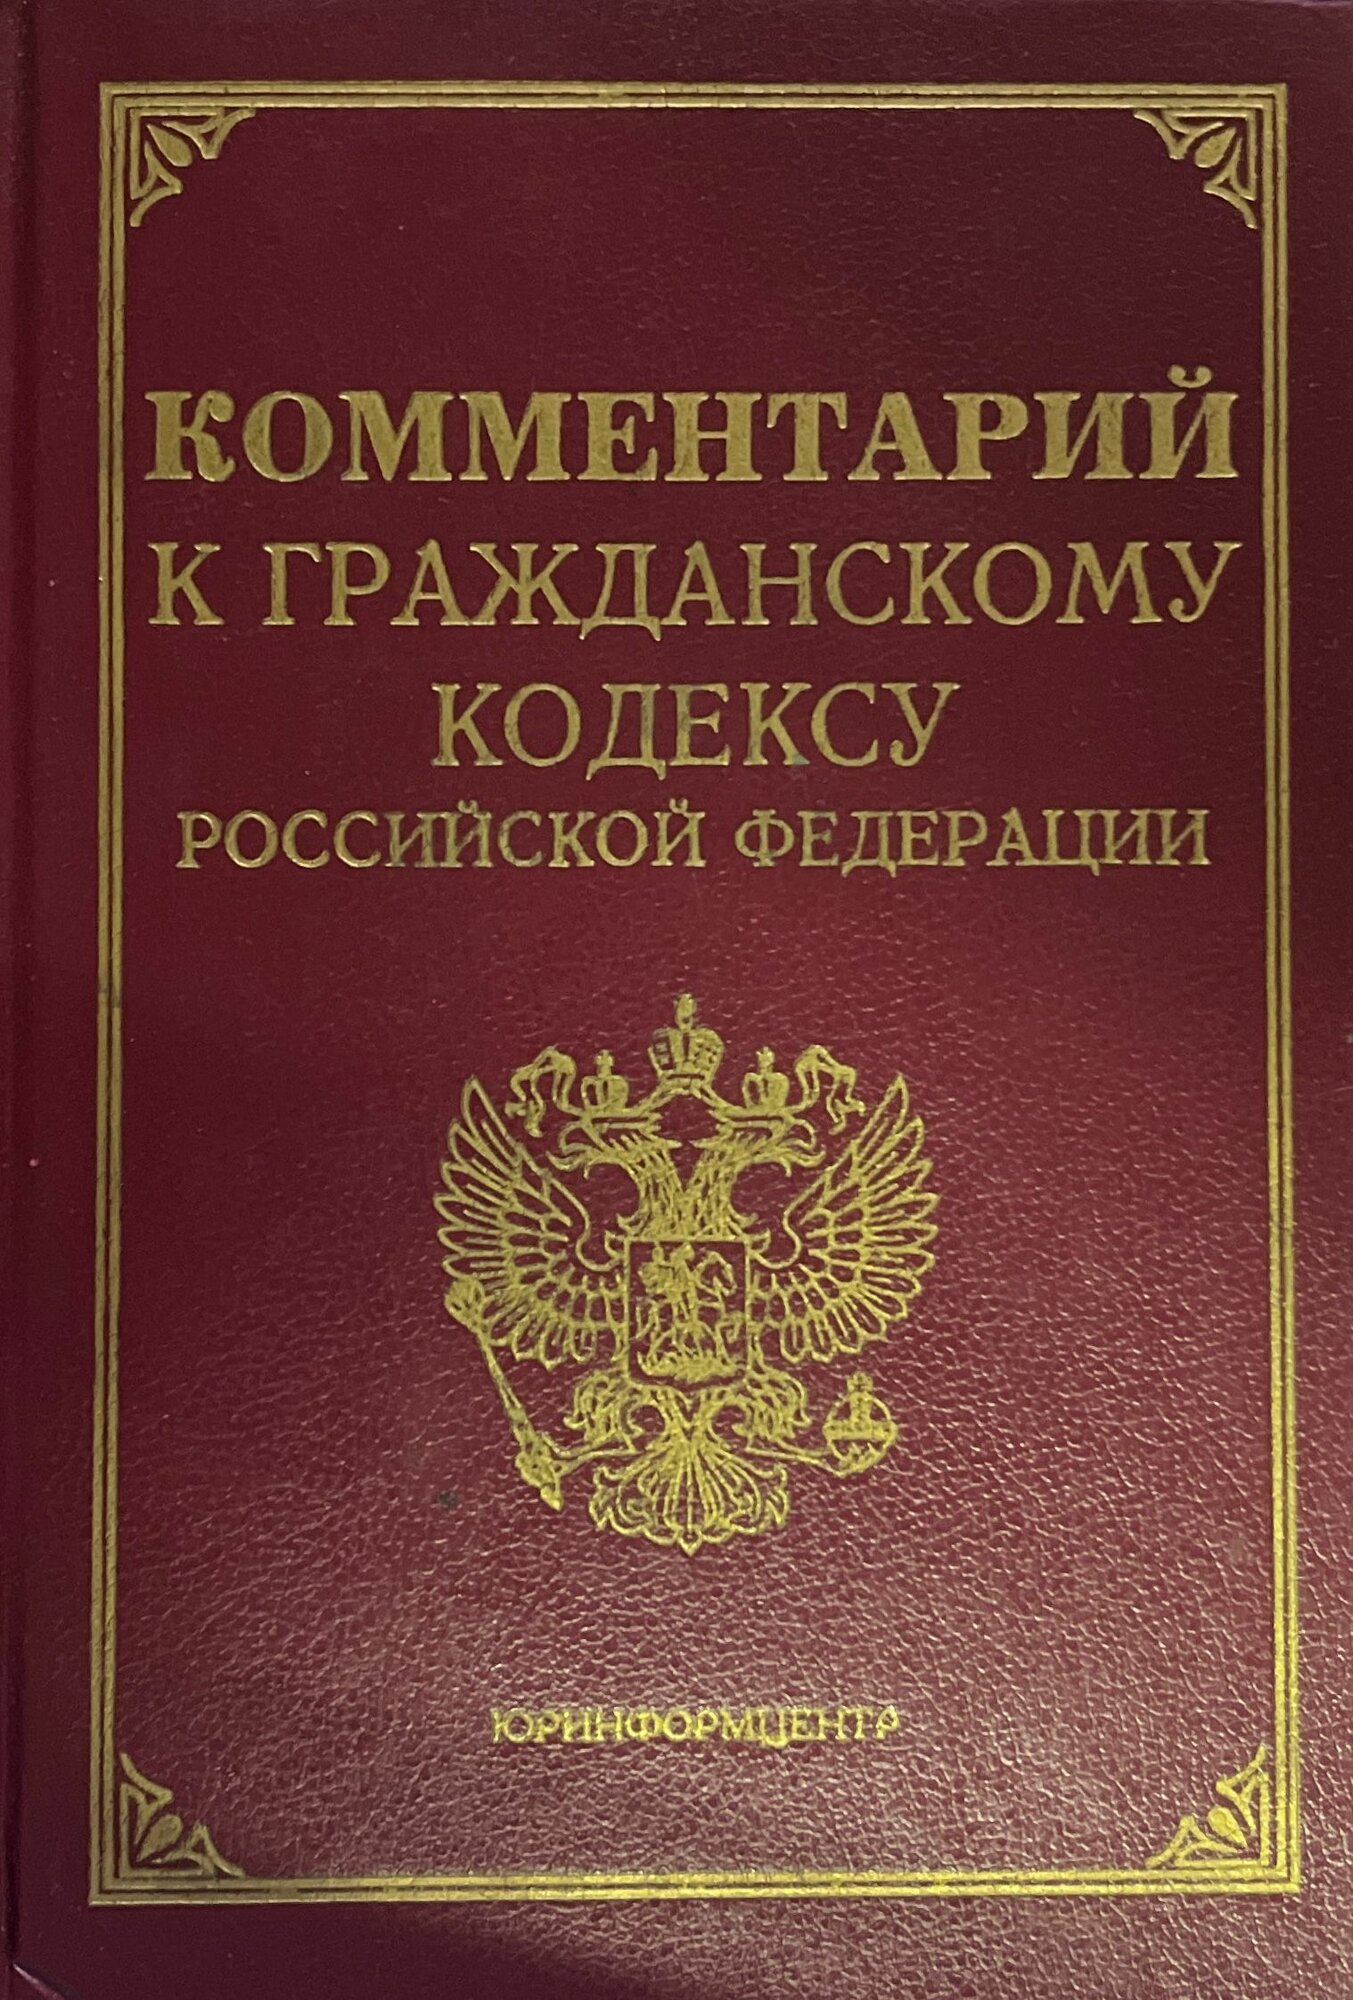 Комментарий к гражданскому кодексу Российской Федерации 1995 г.